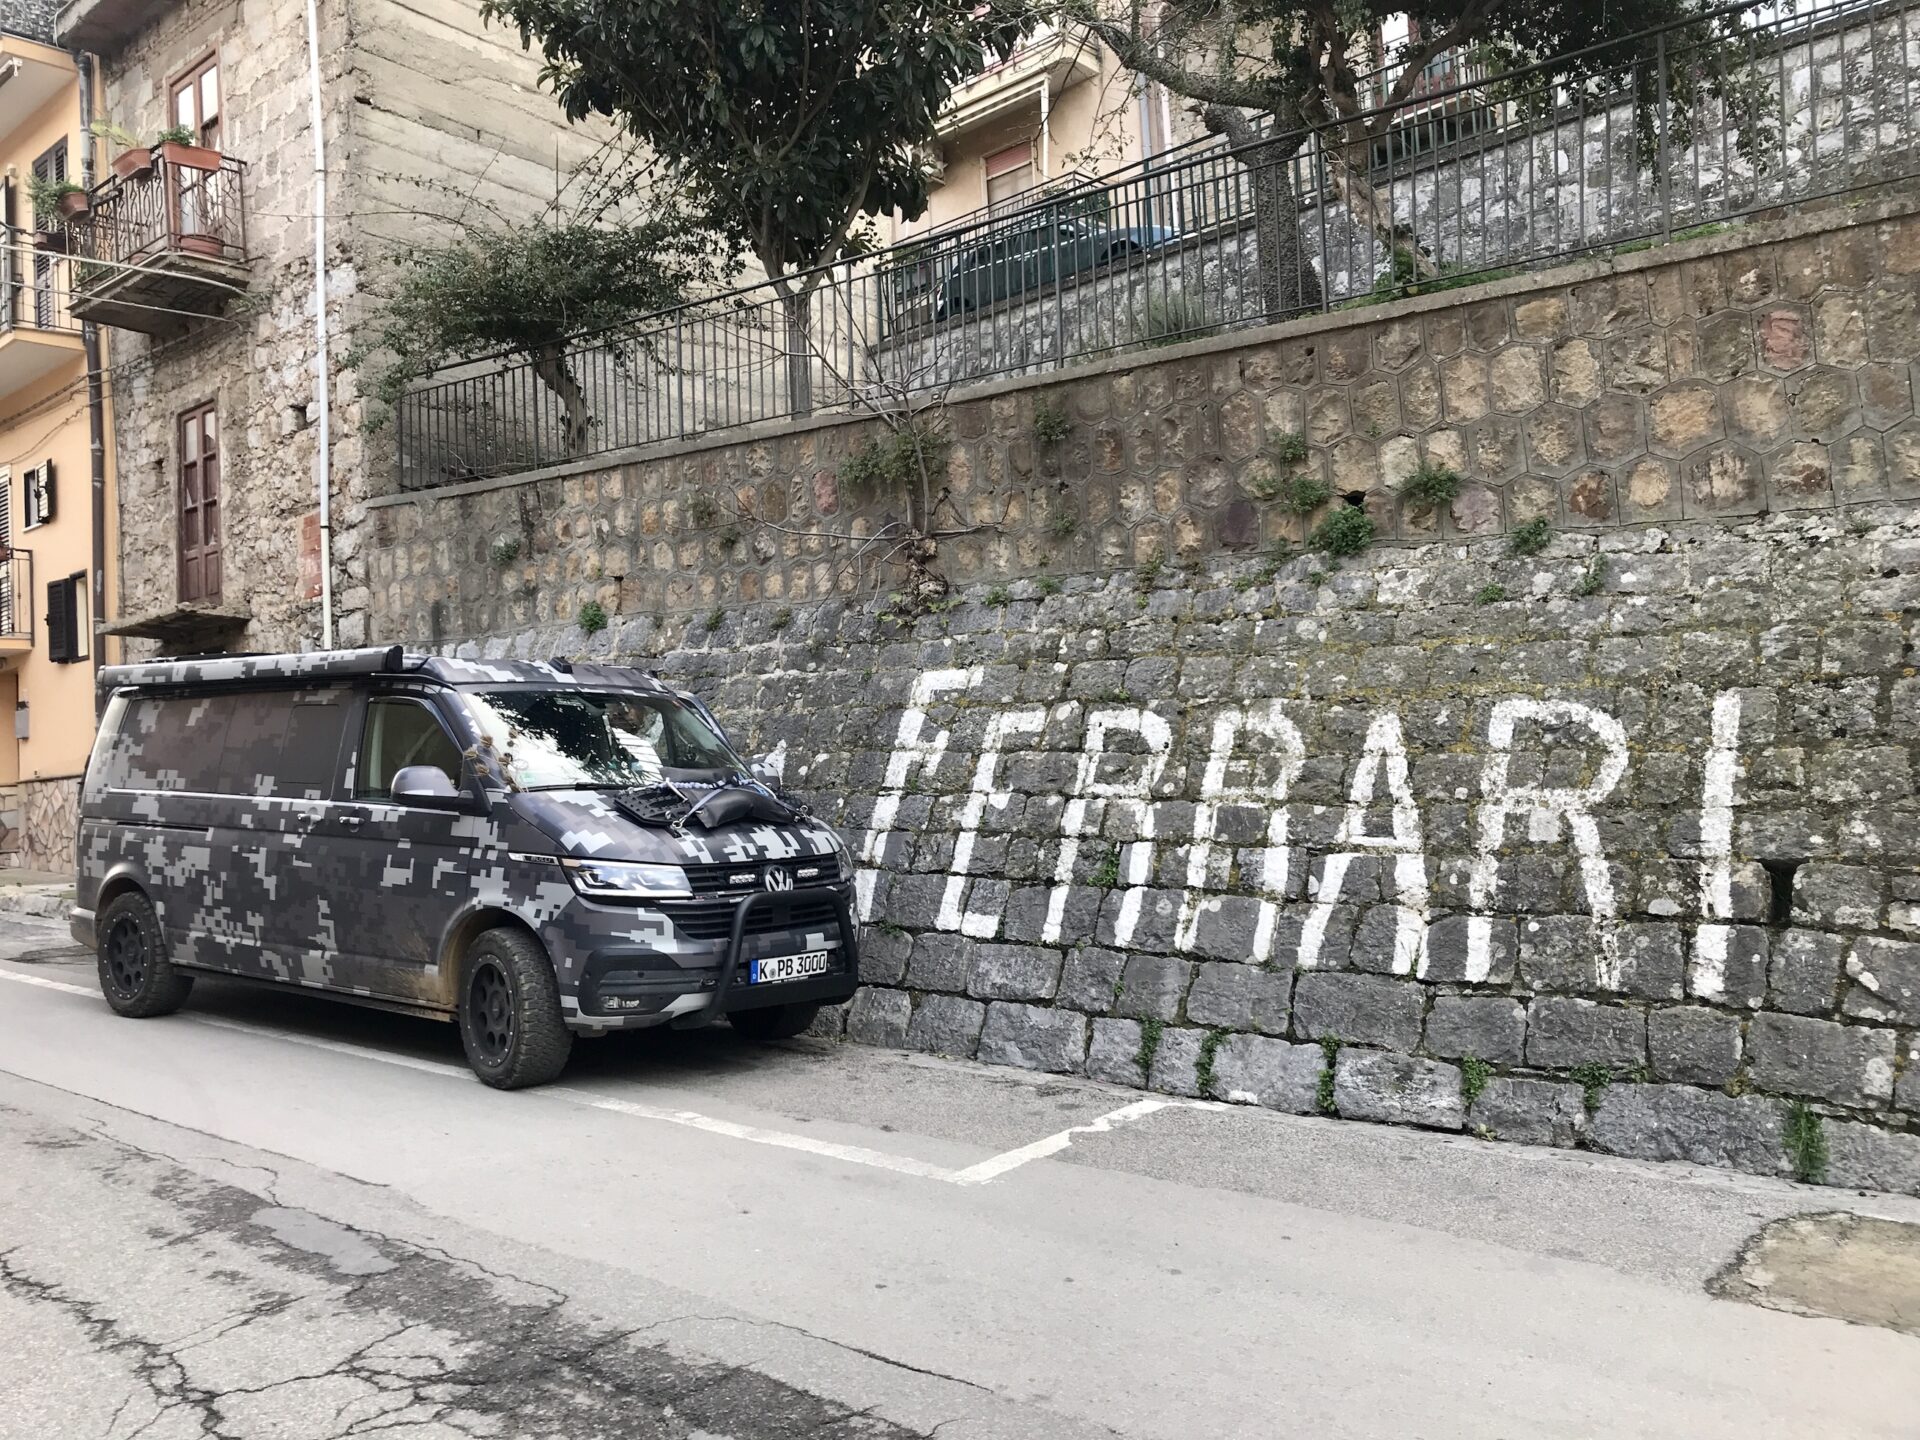 PlanBwagen in Collesano vor einem Ferrari Schriftzug